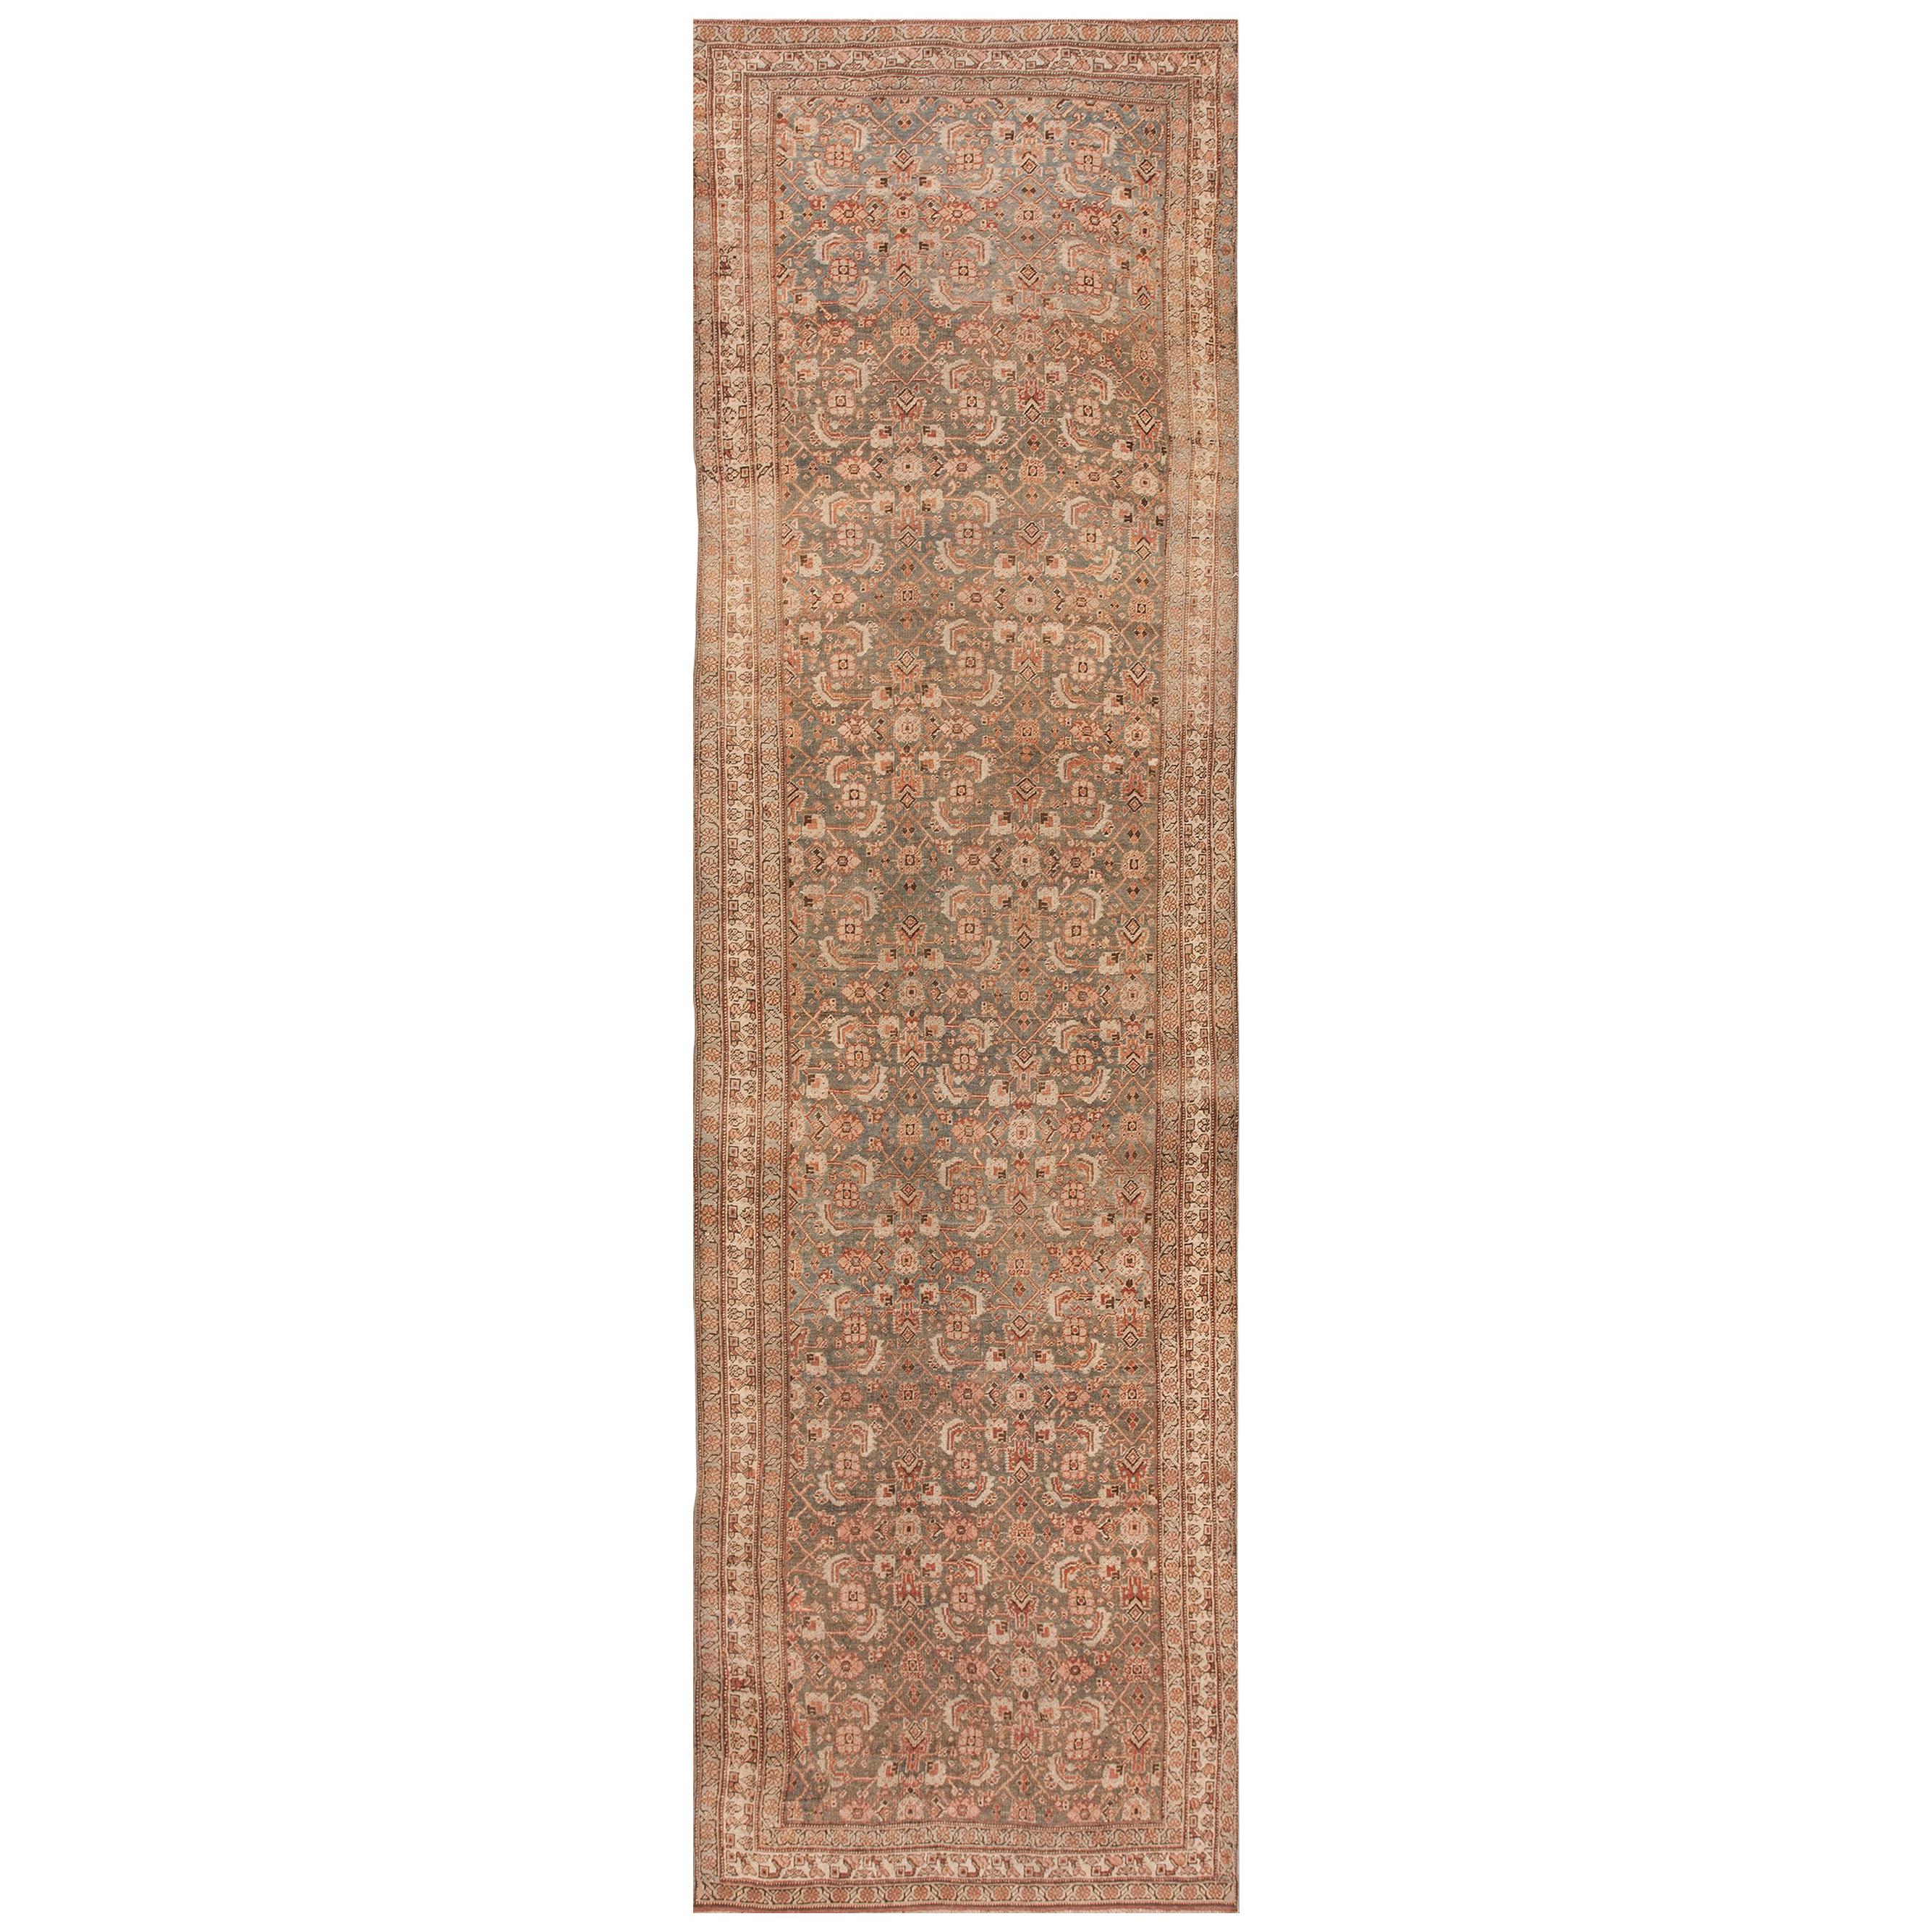 Persischer Bijar-Teppich des frühen 20. Jahrhunderts ( 1,42 m x 3,35 m – 127 x 447 cm)